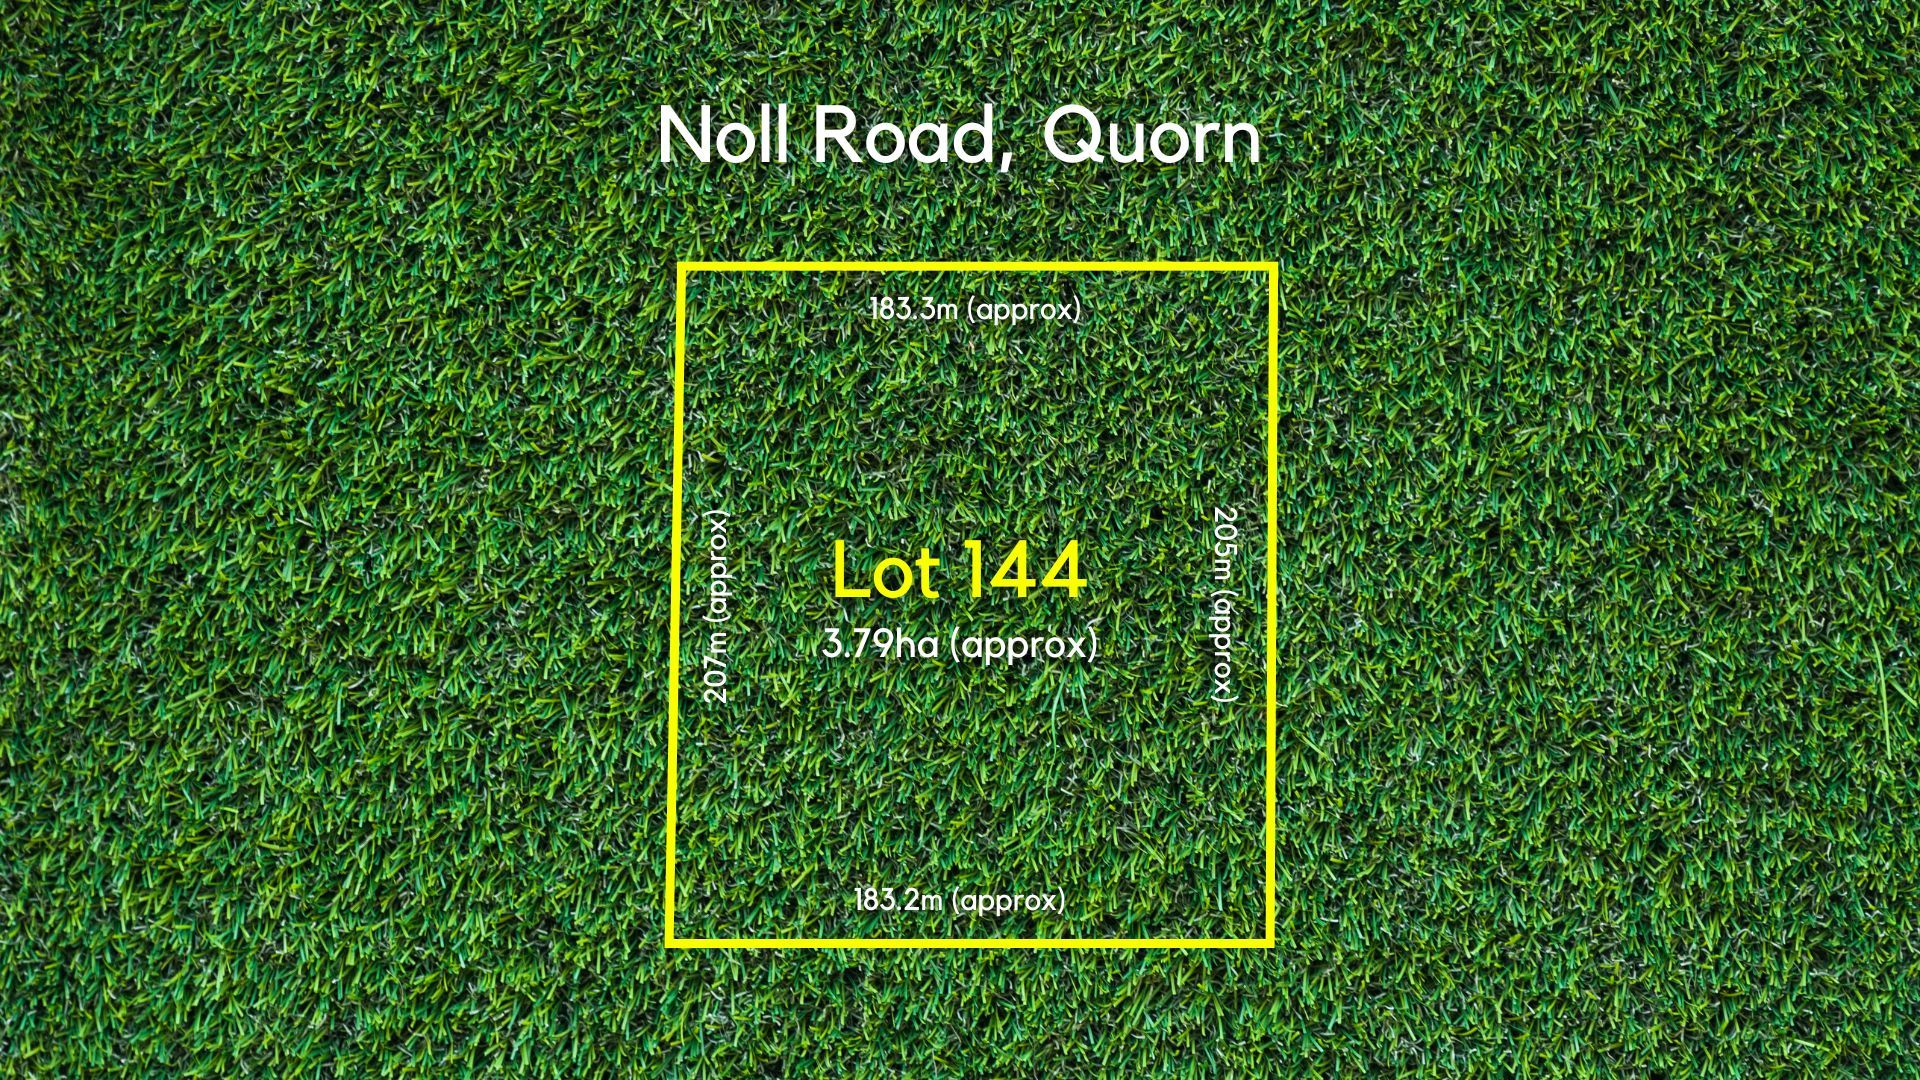 Lot 144 Noll Road, Quorn SA 5433, Image 0